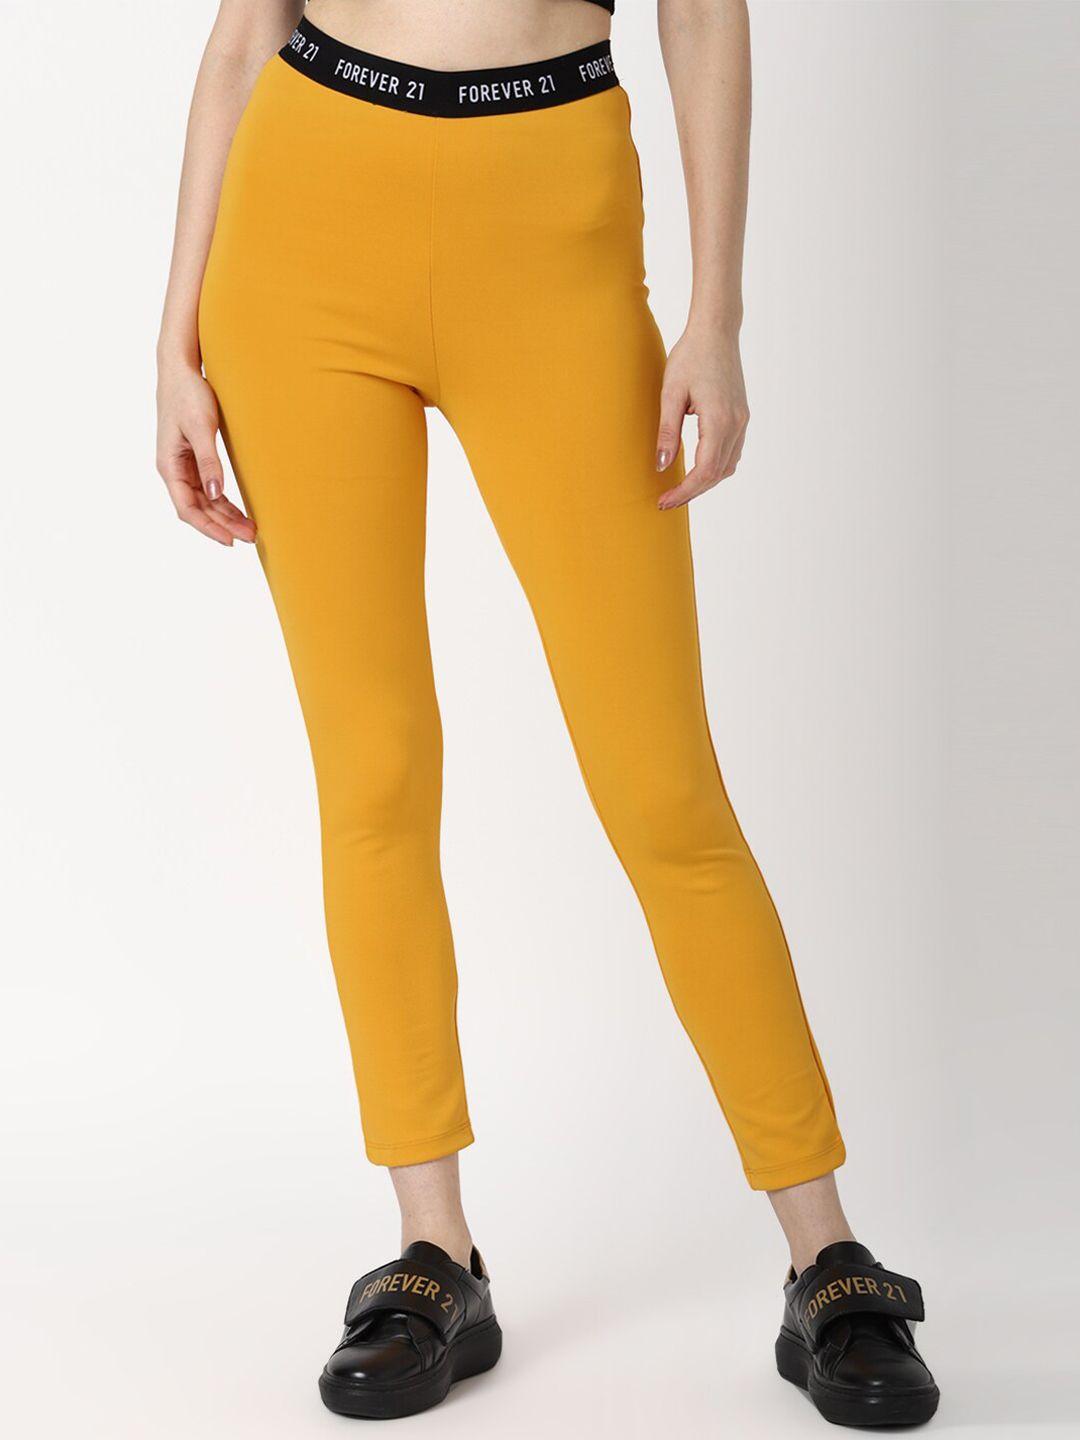 forever-21-yellow-solid-leggings-ankle-length-leggings